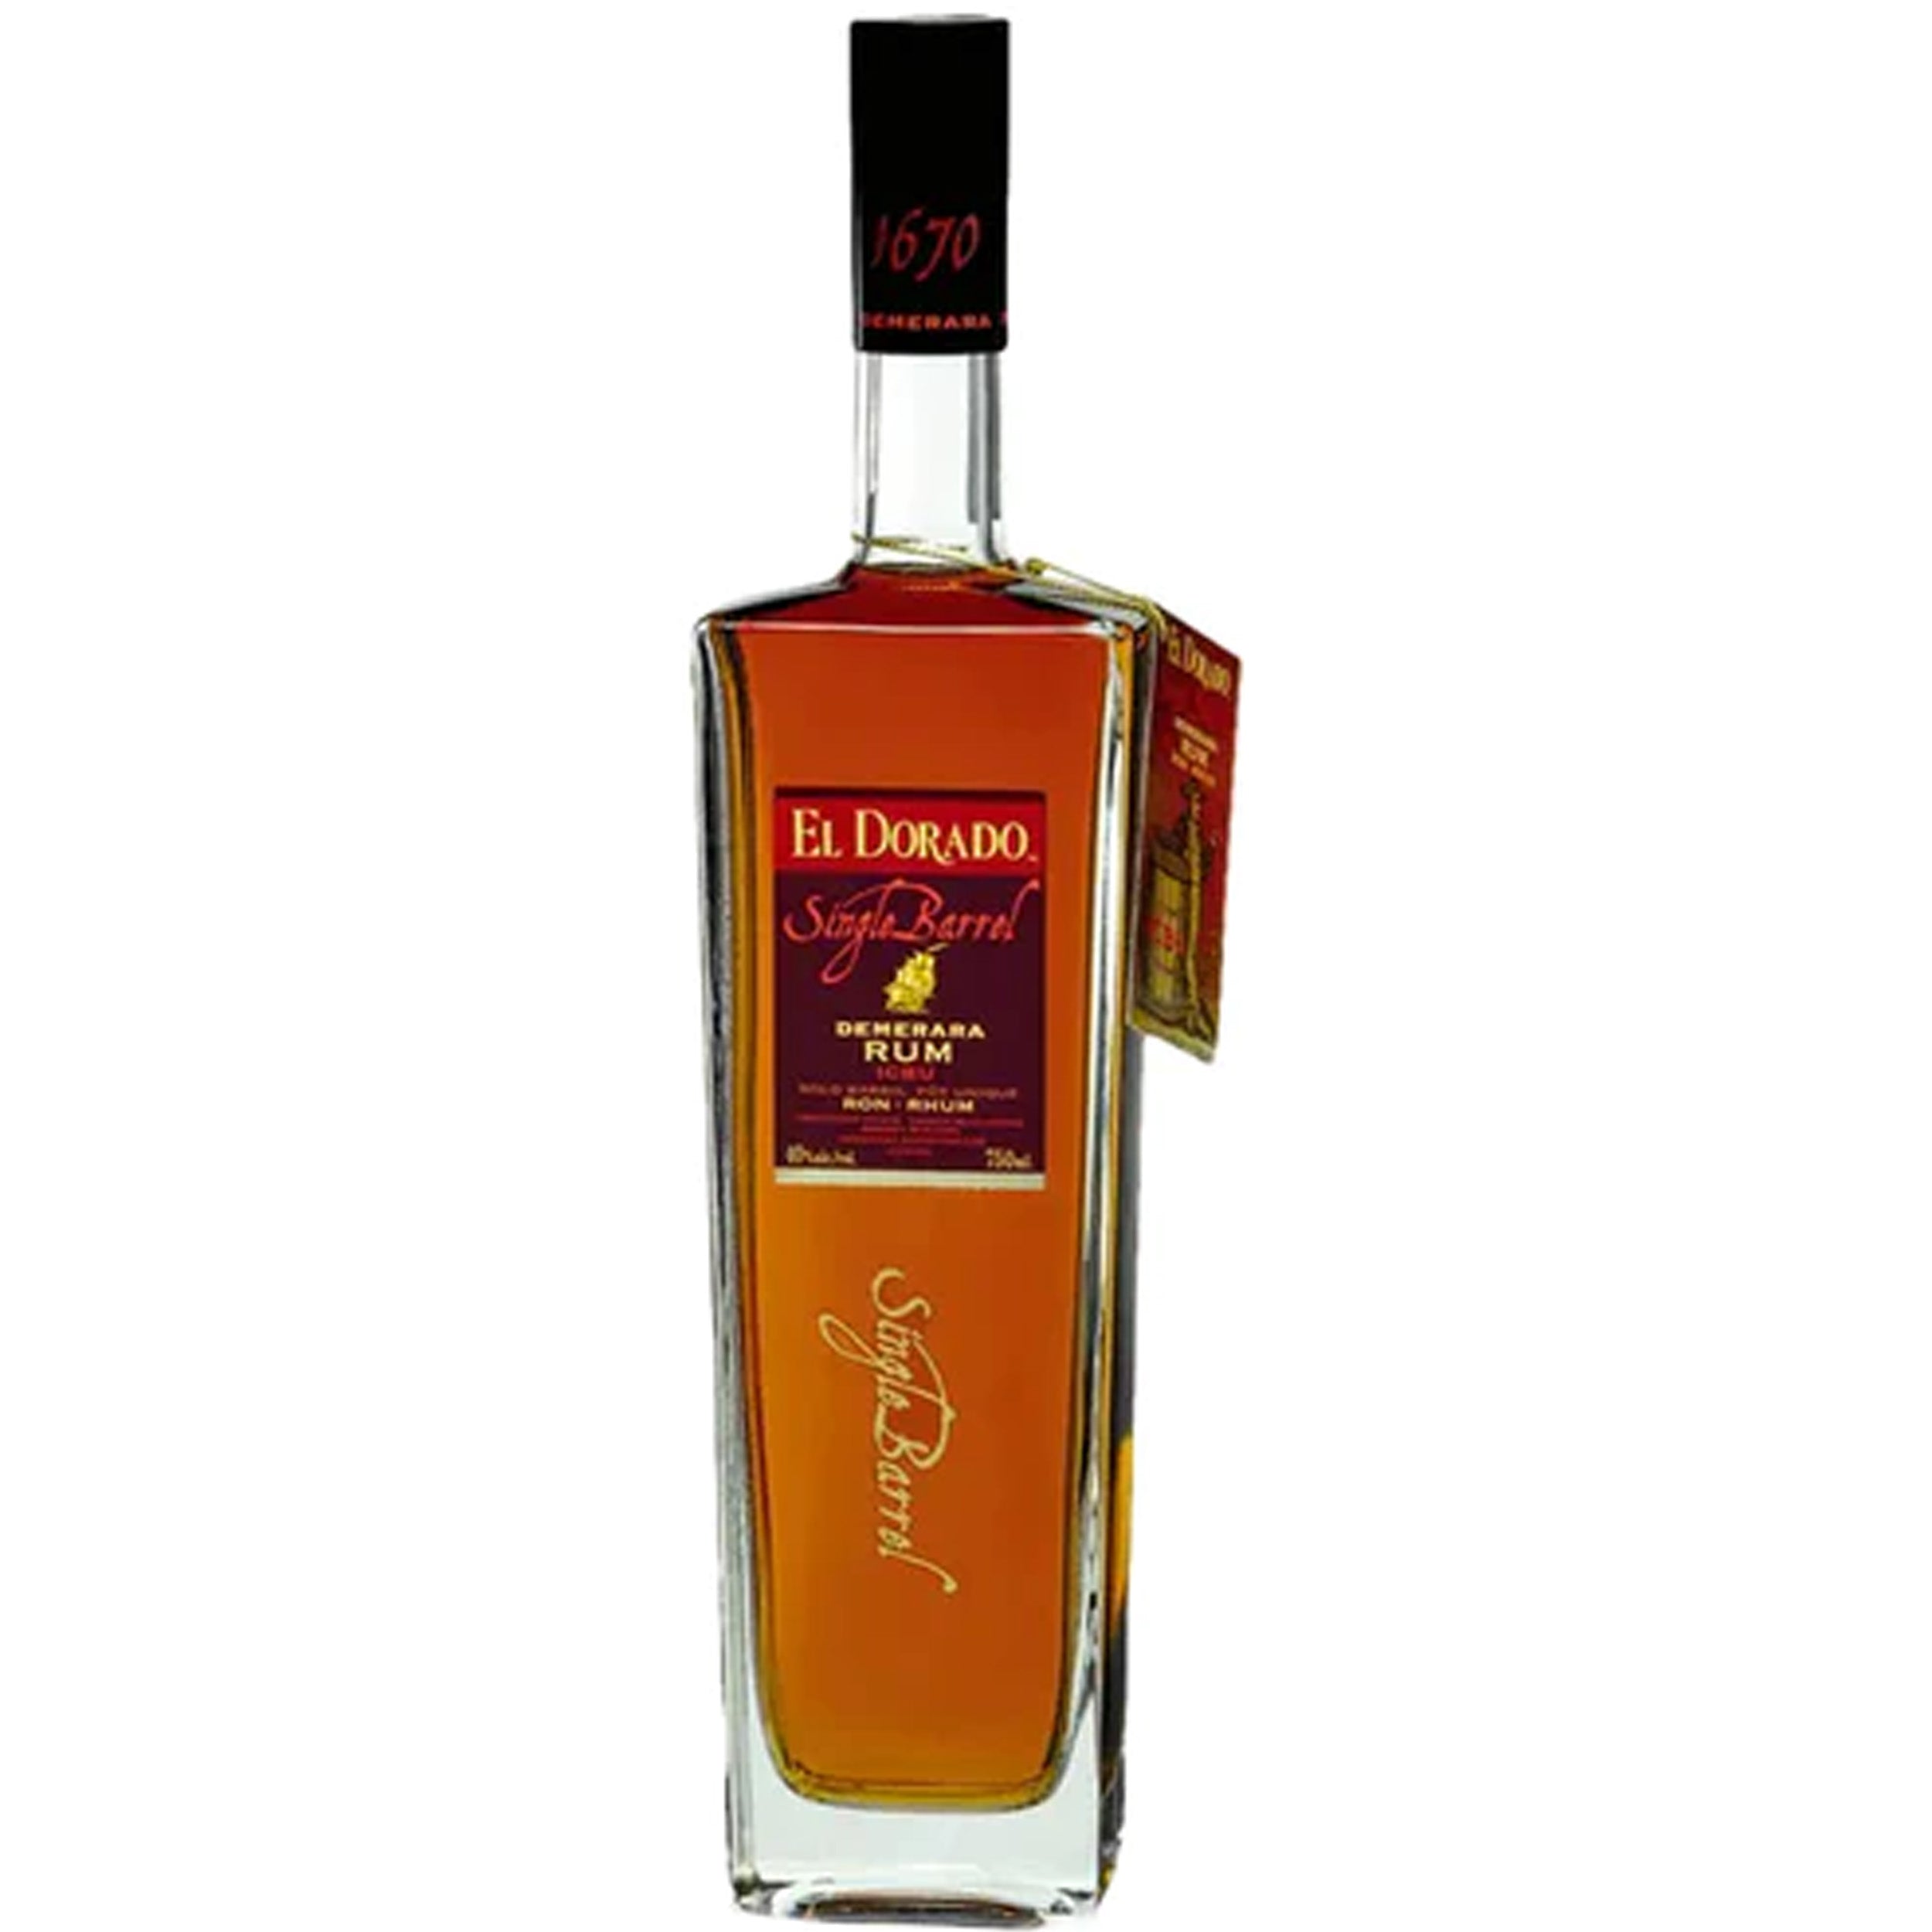 El Dorado Single Barrel ICBU Rum